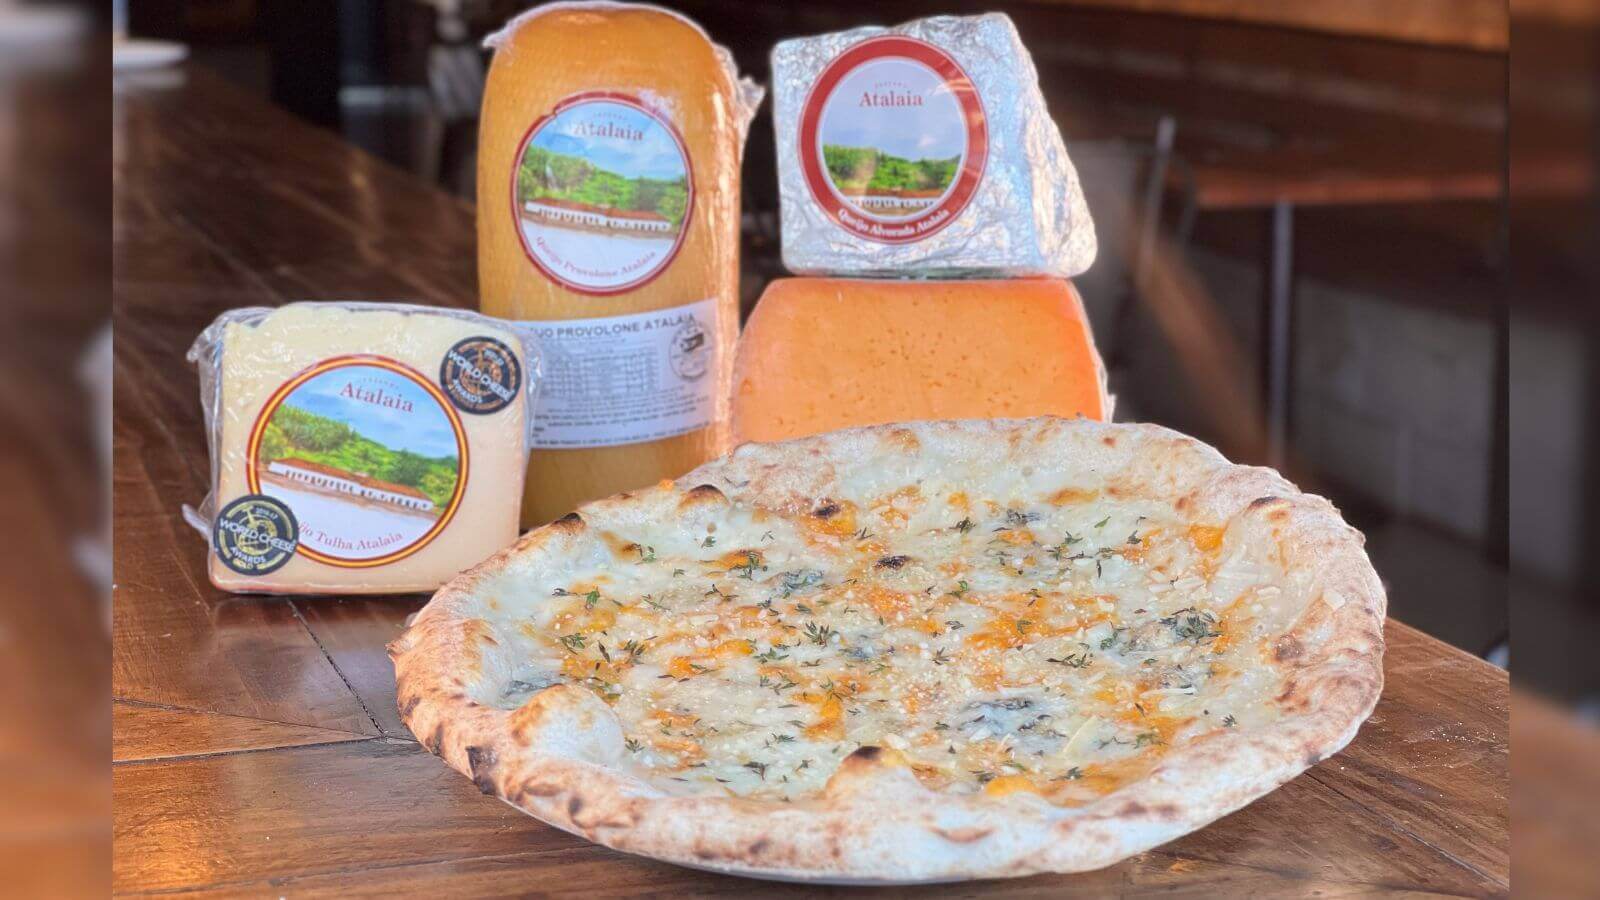 430 Gradi lança pizza feita exclusivamente com queijos premiados